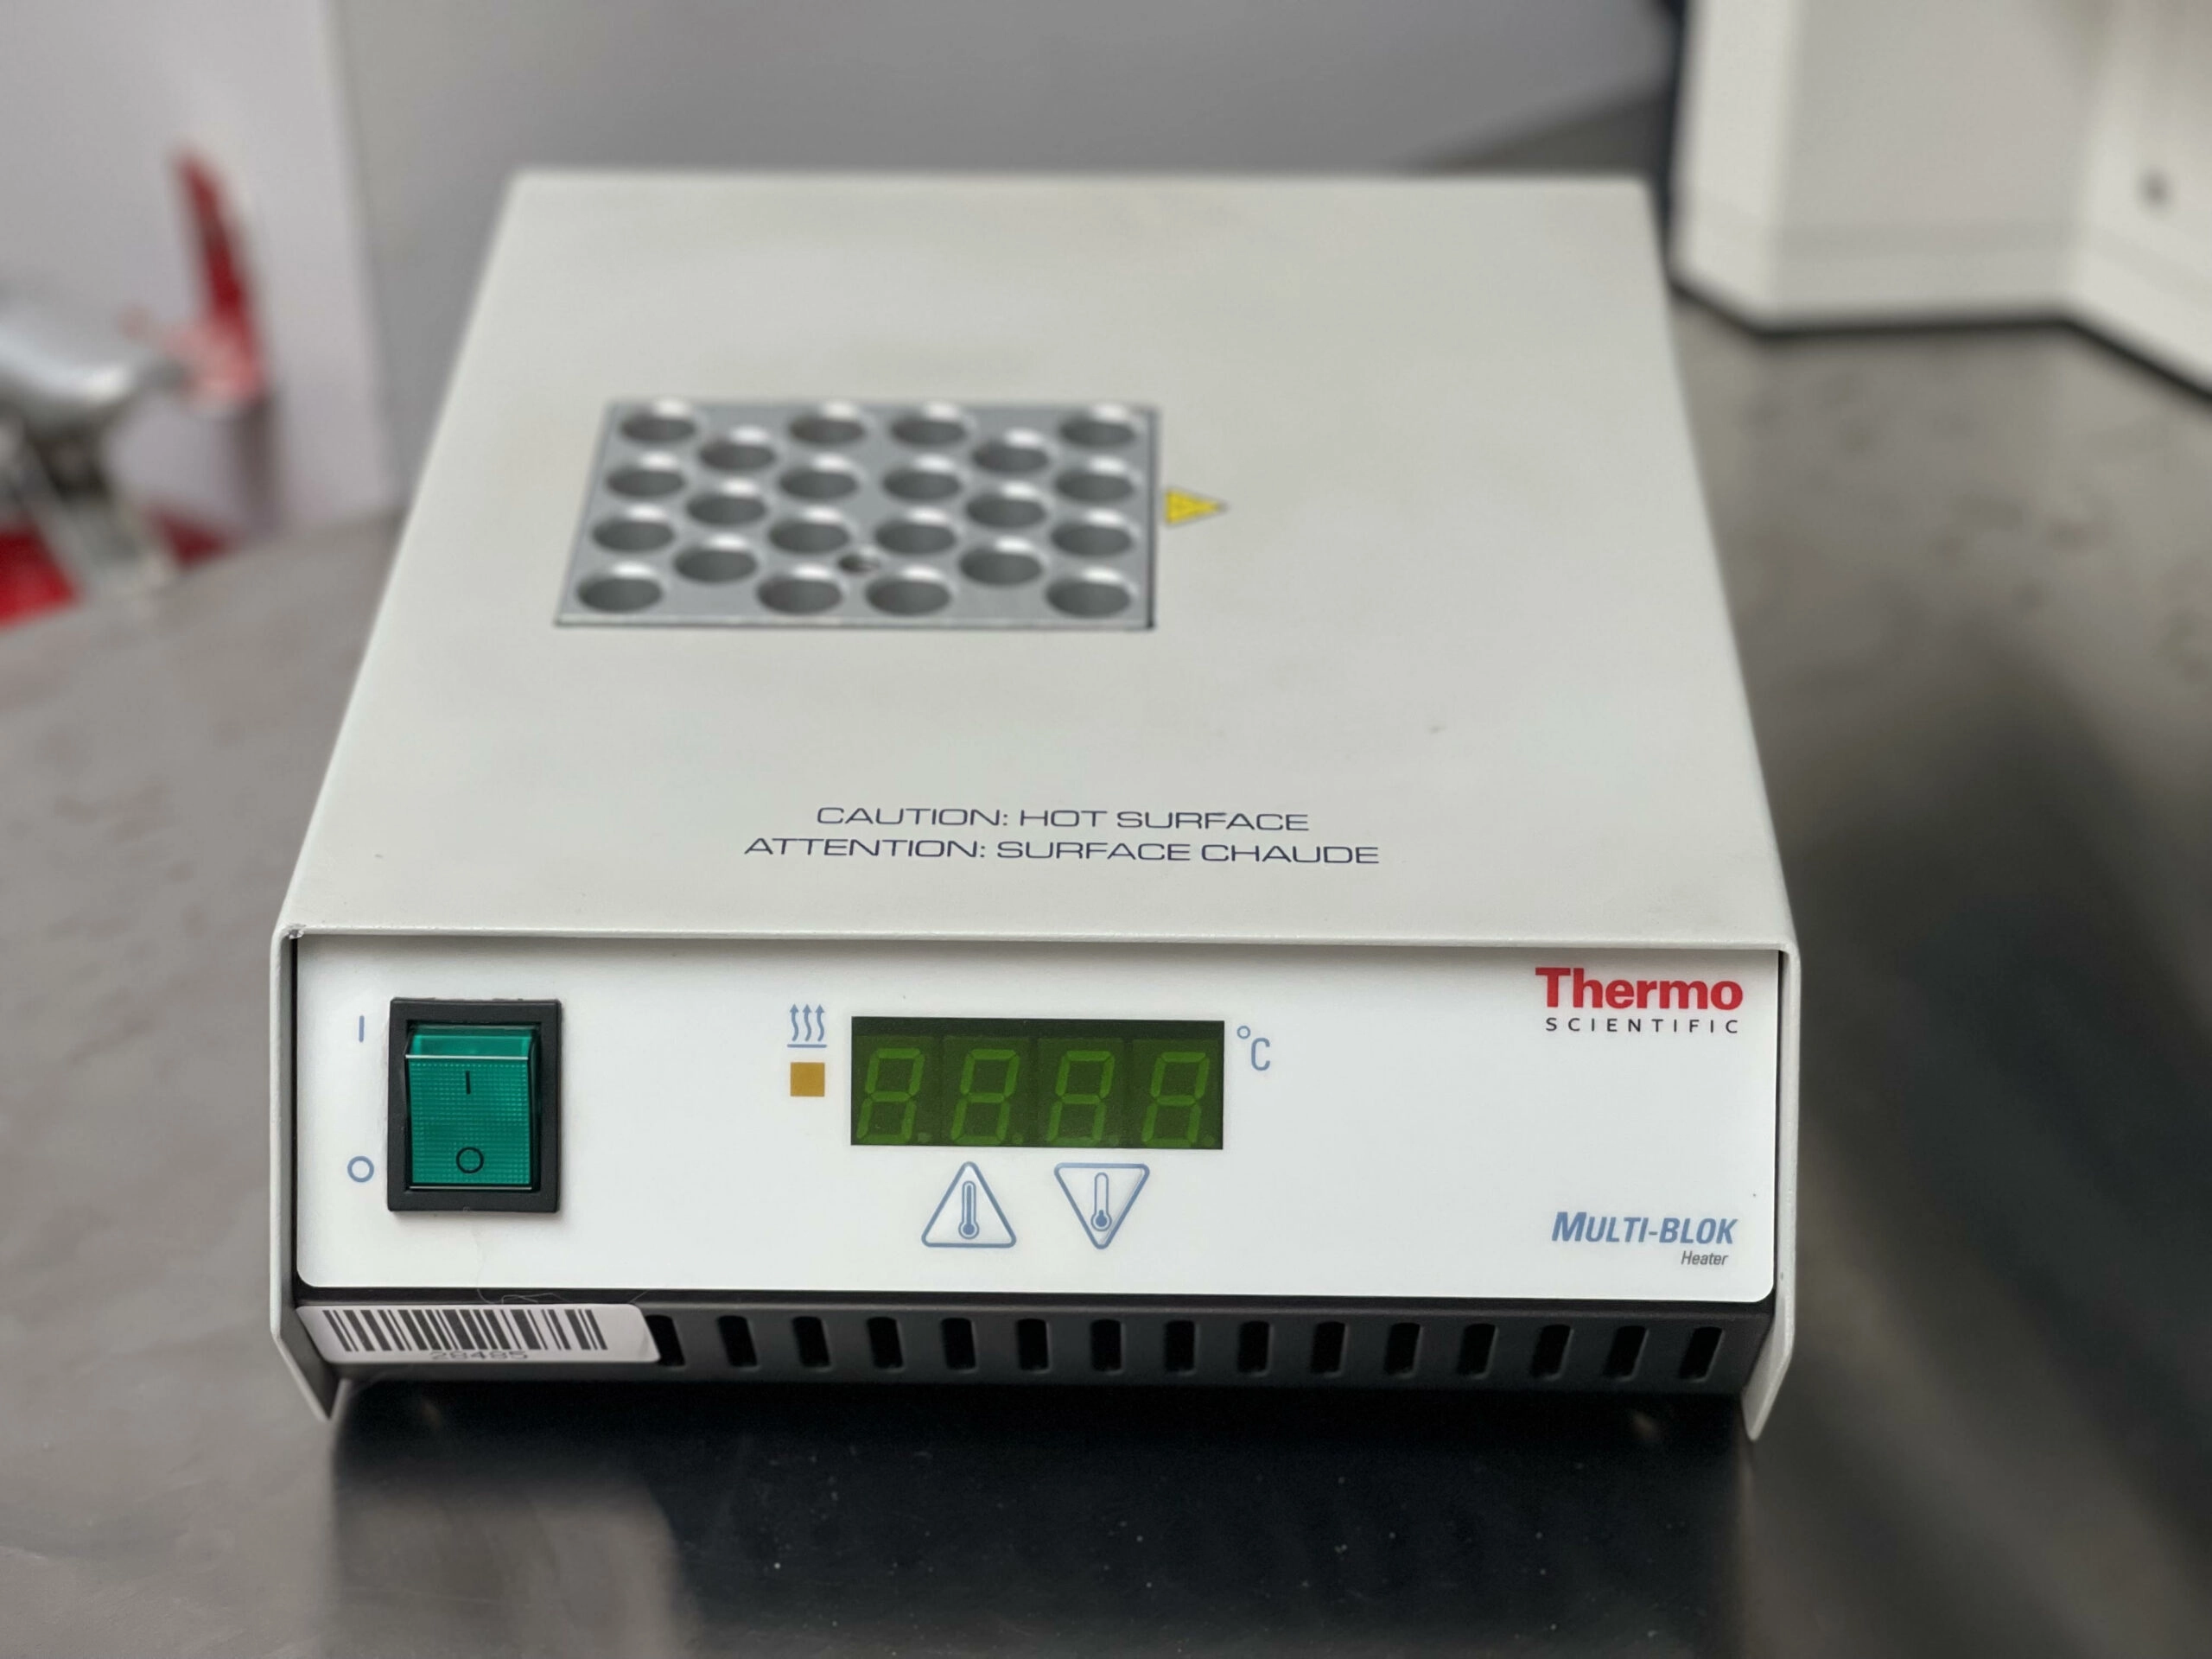 Thermo Scientific Multi-Blok 2000 Dry Bath Incubator